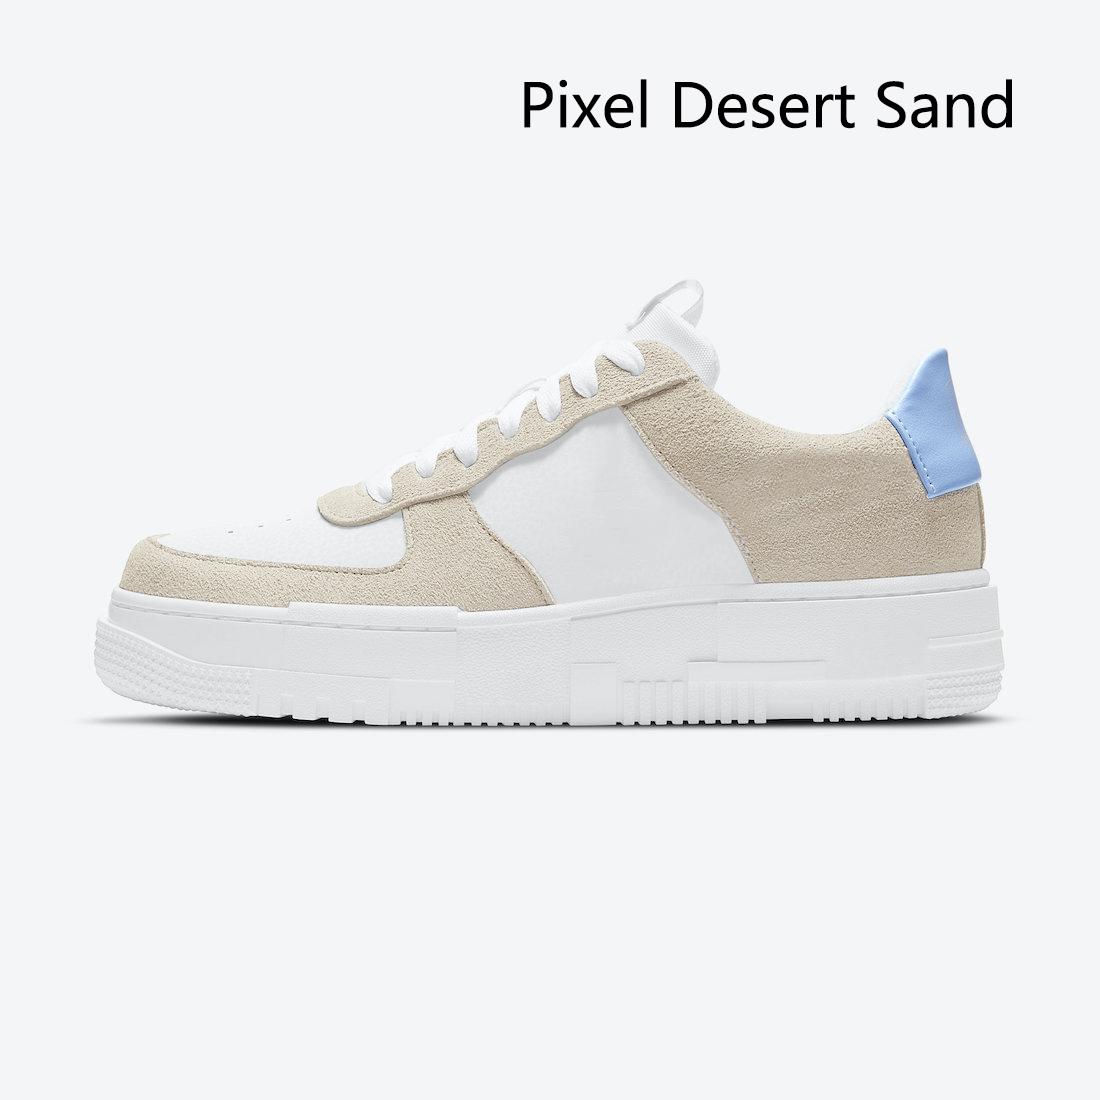 Pixel Goldkette Low -Running -Schuhe Wüste Sand frisch silberlachs Ferse Segel Bräune Schlange hohe Qualität